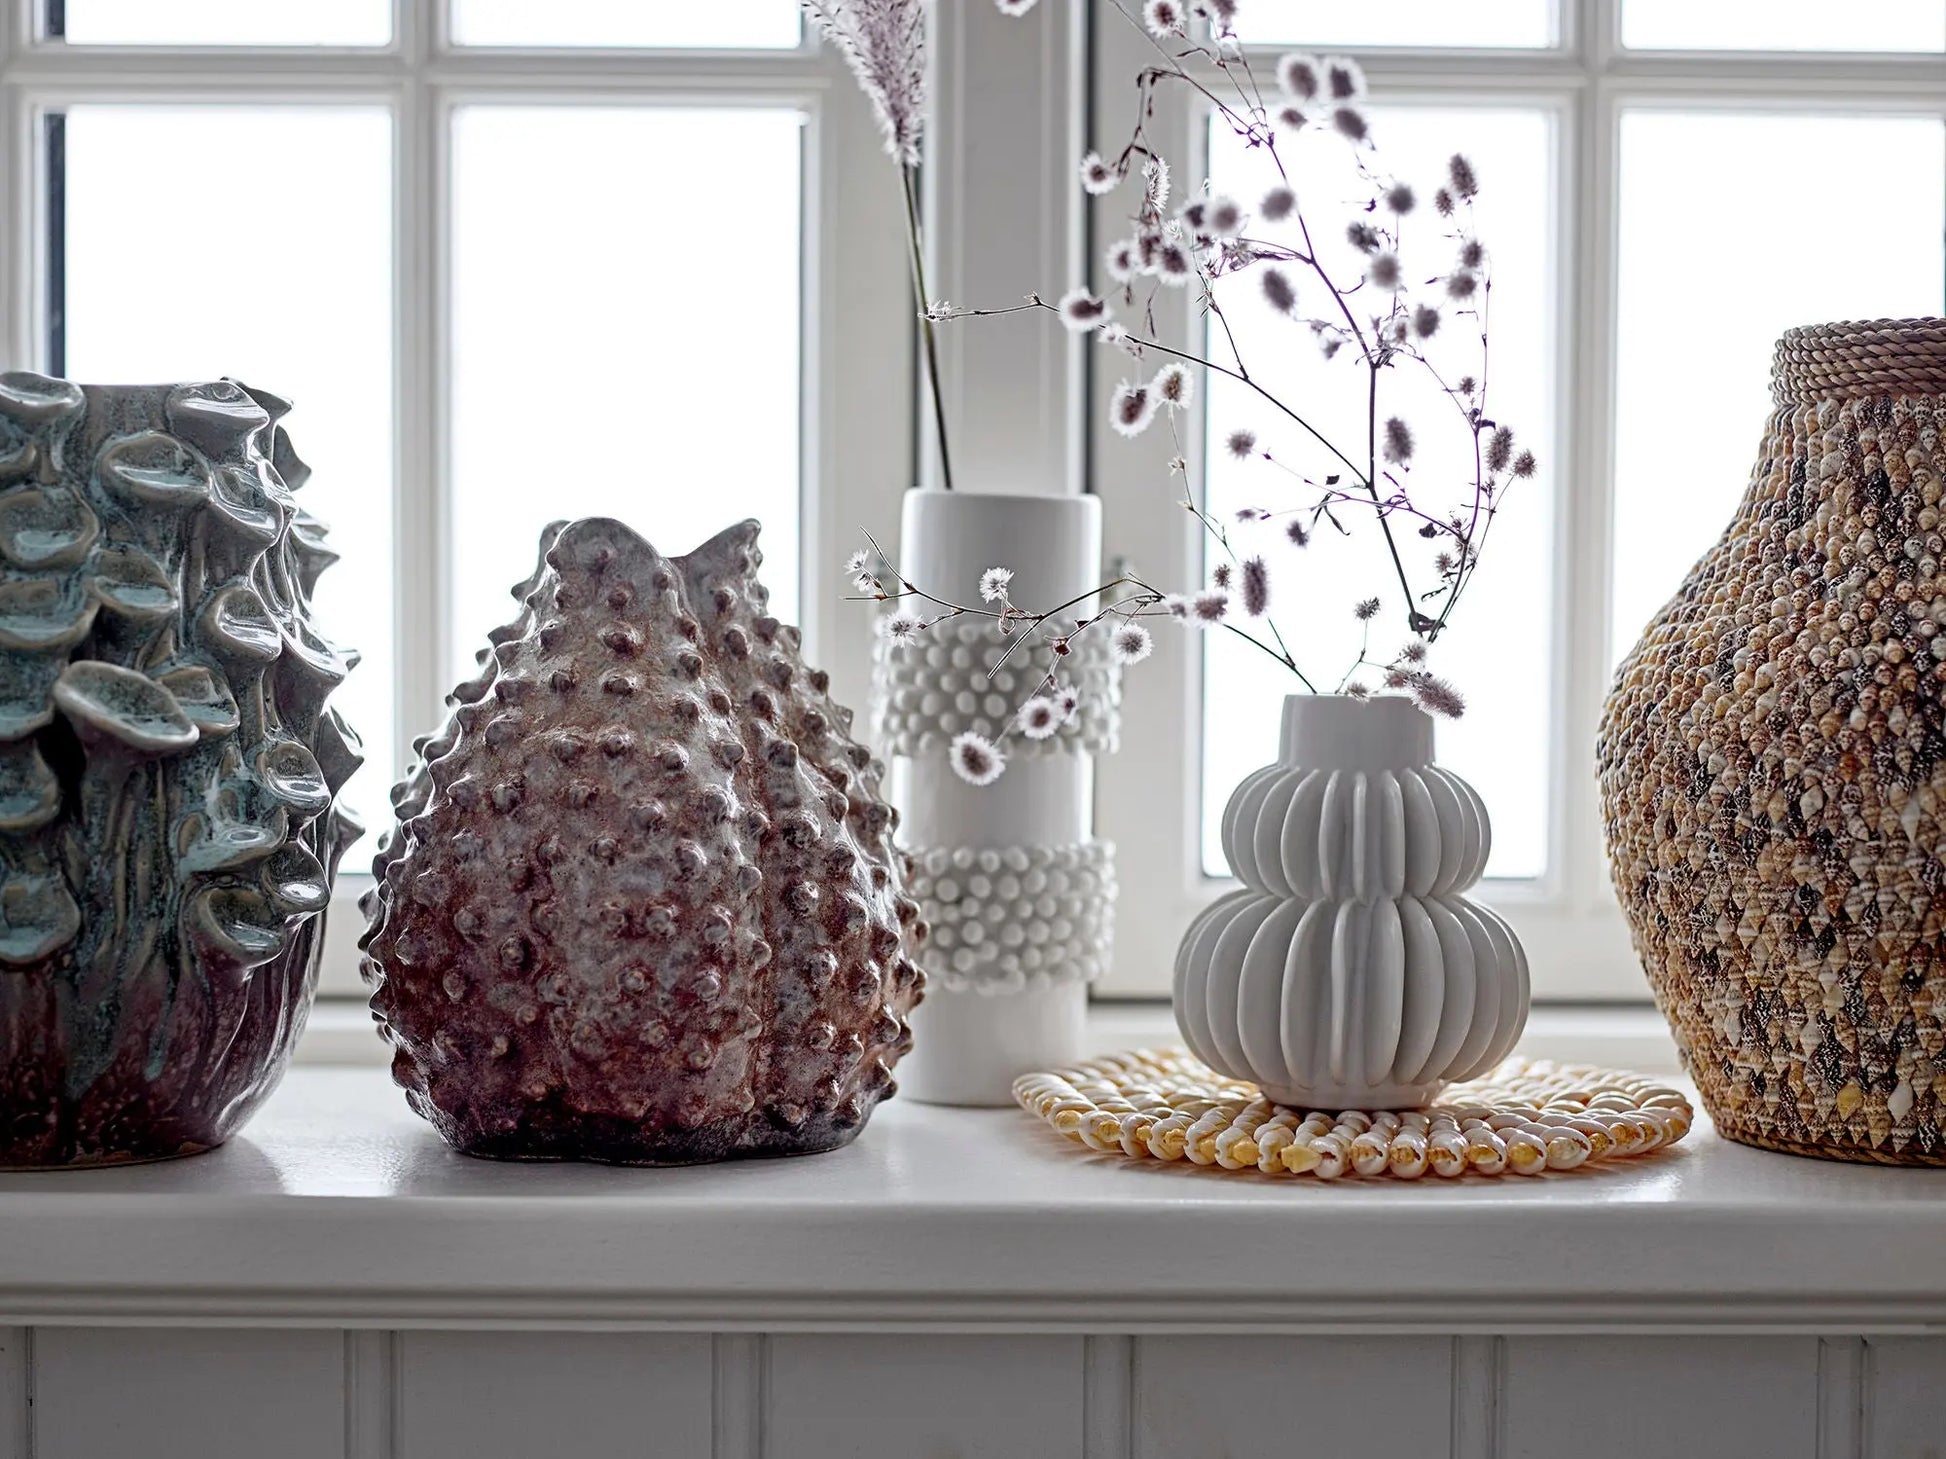 Vase grès blanc - PETALE - maison bloom concept